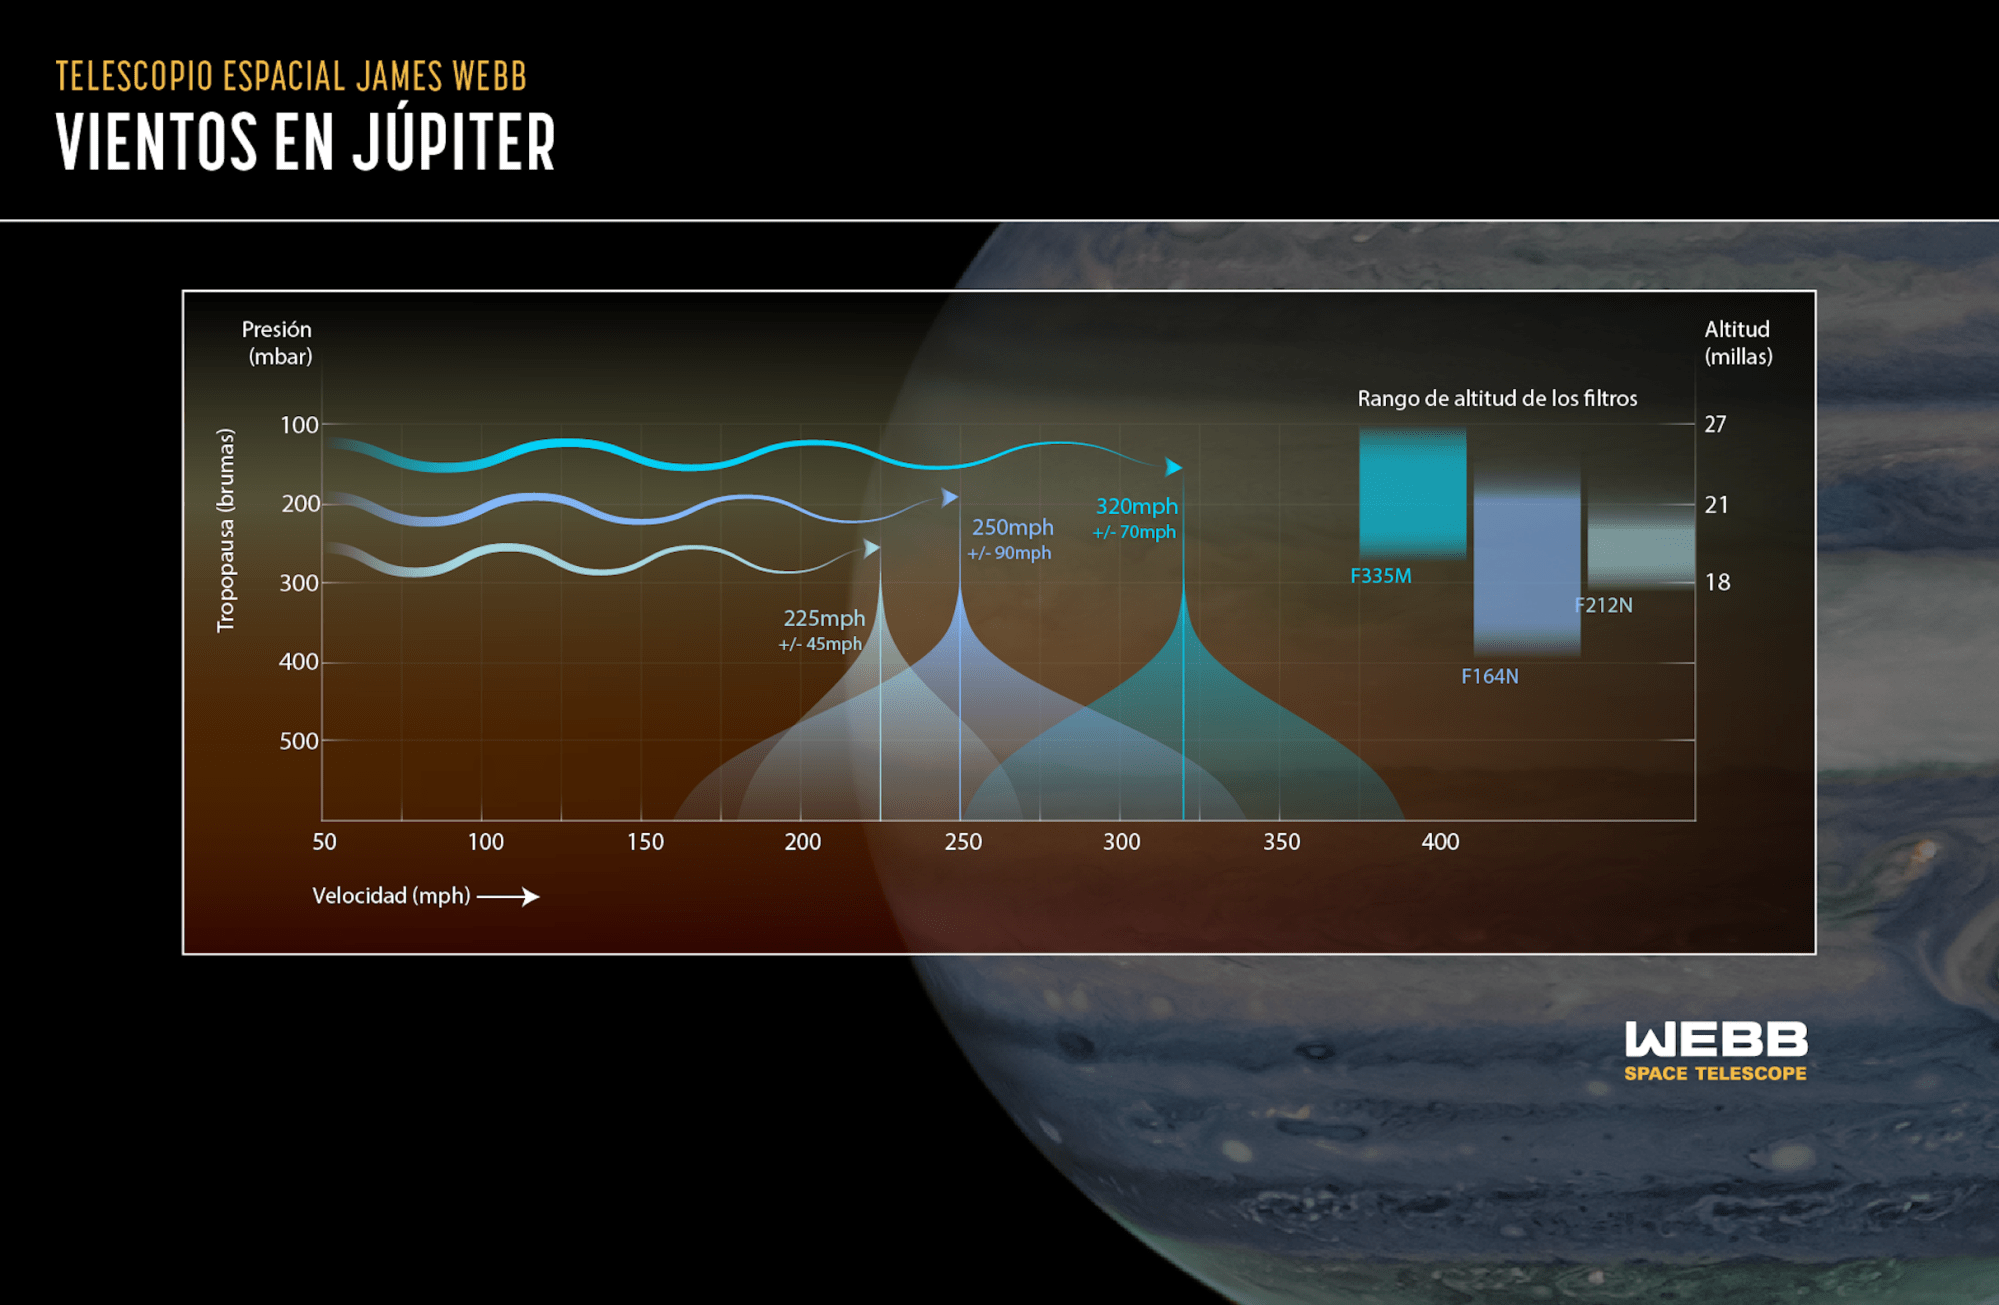 Júpiter tiene una atmósfera en capas, y esta ilustración muestra cómo el telescopio espacial James Webb de la NASA es extraordinariamente capaz de recopilar información de capas más altas de la altitud que antes.